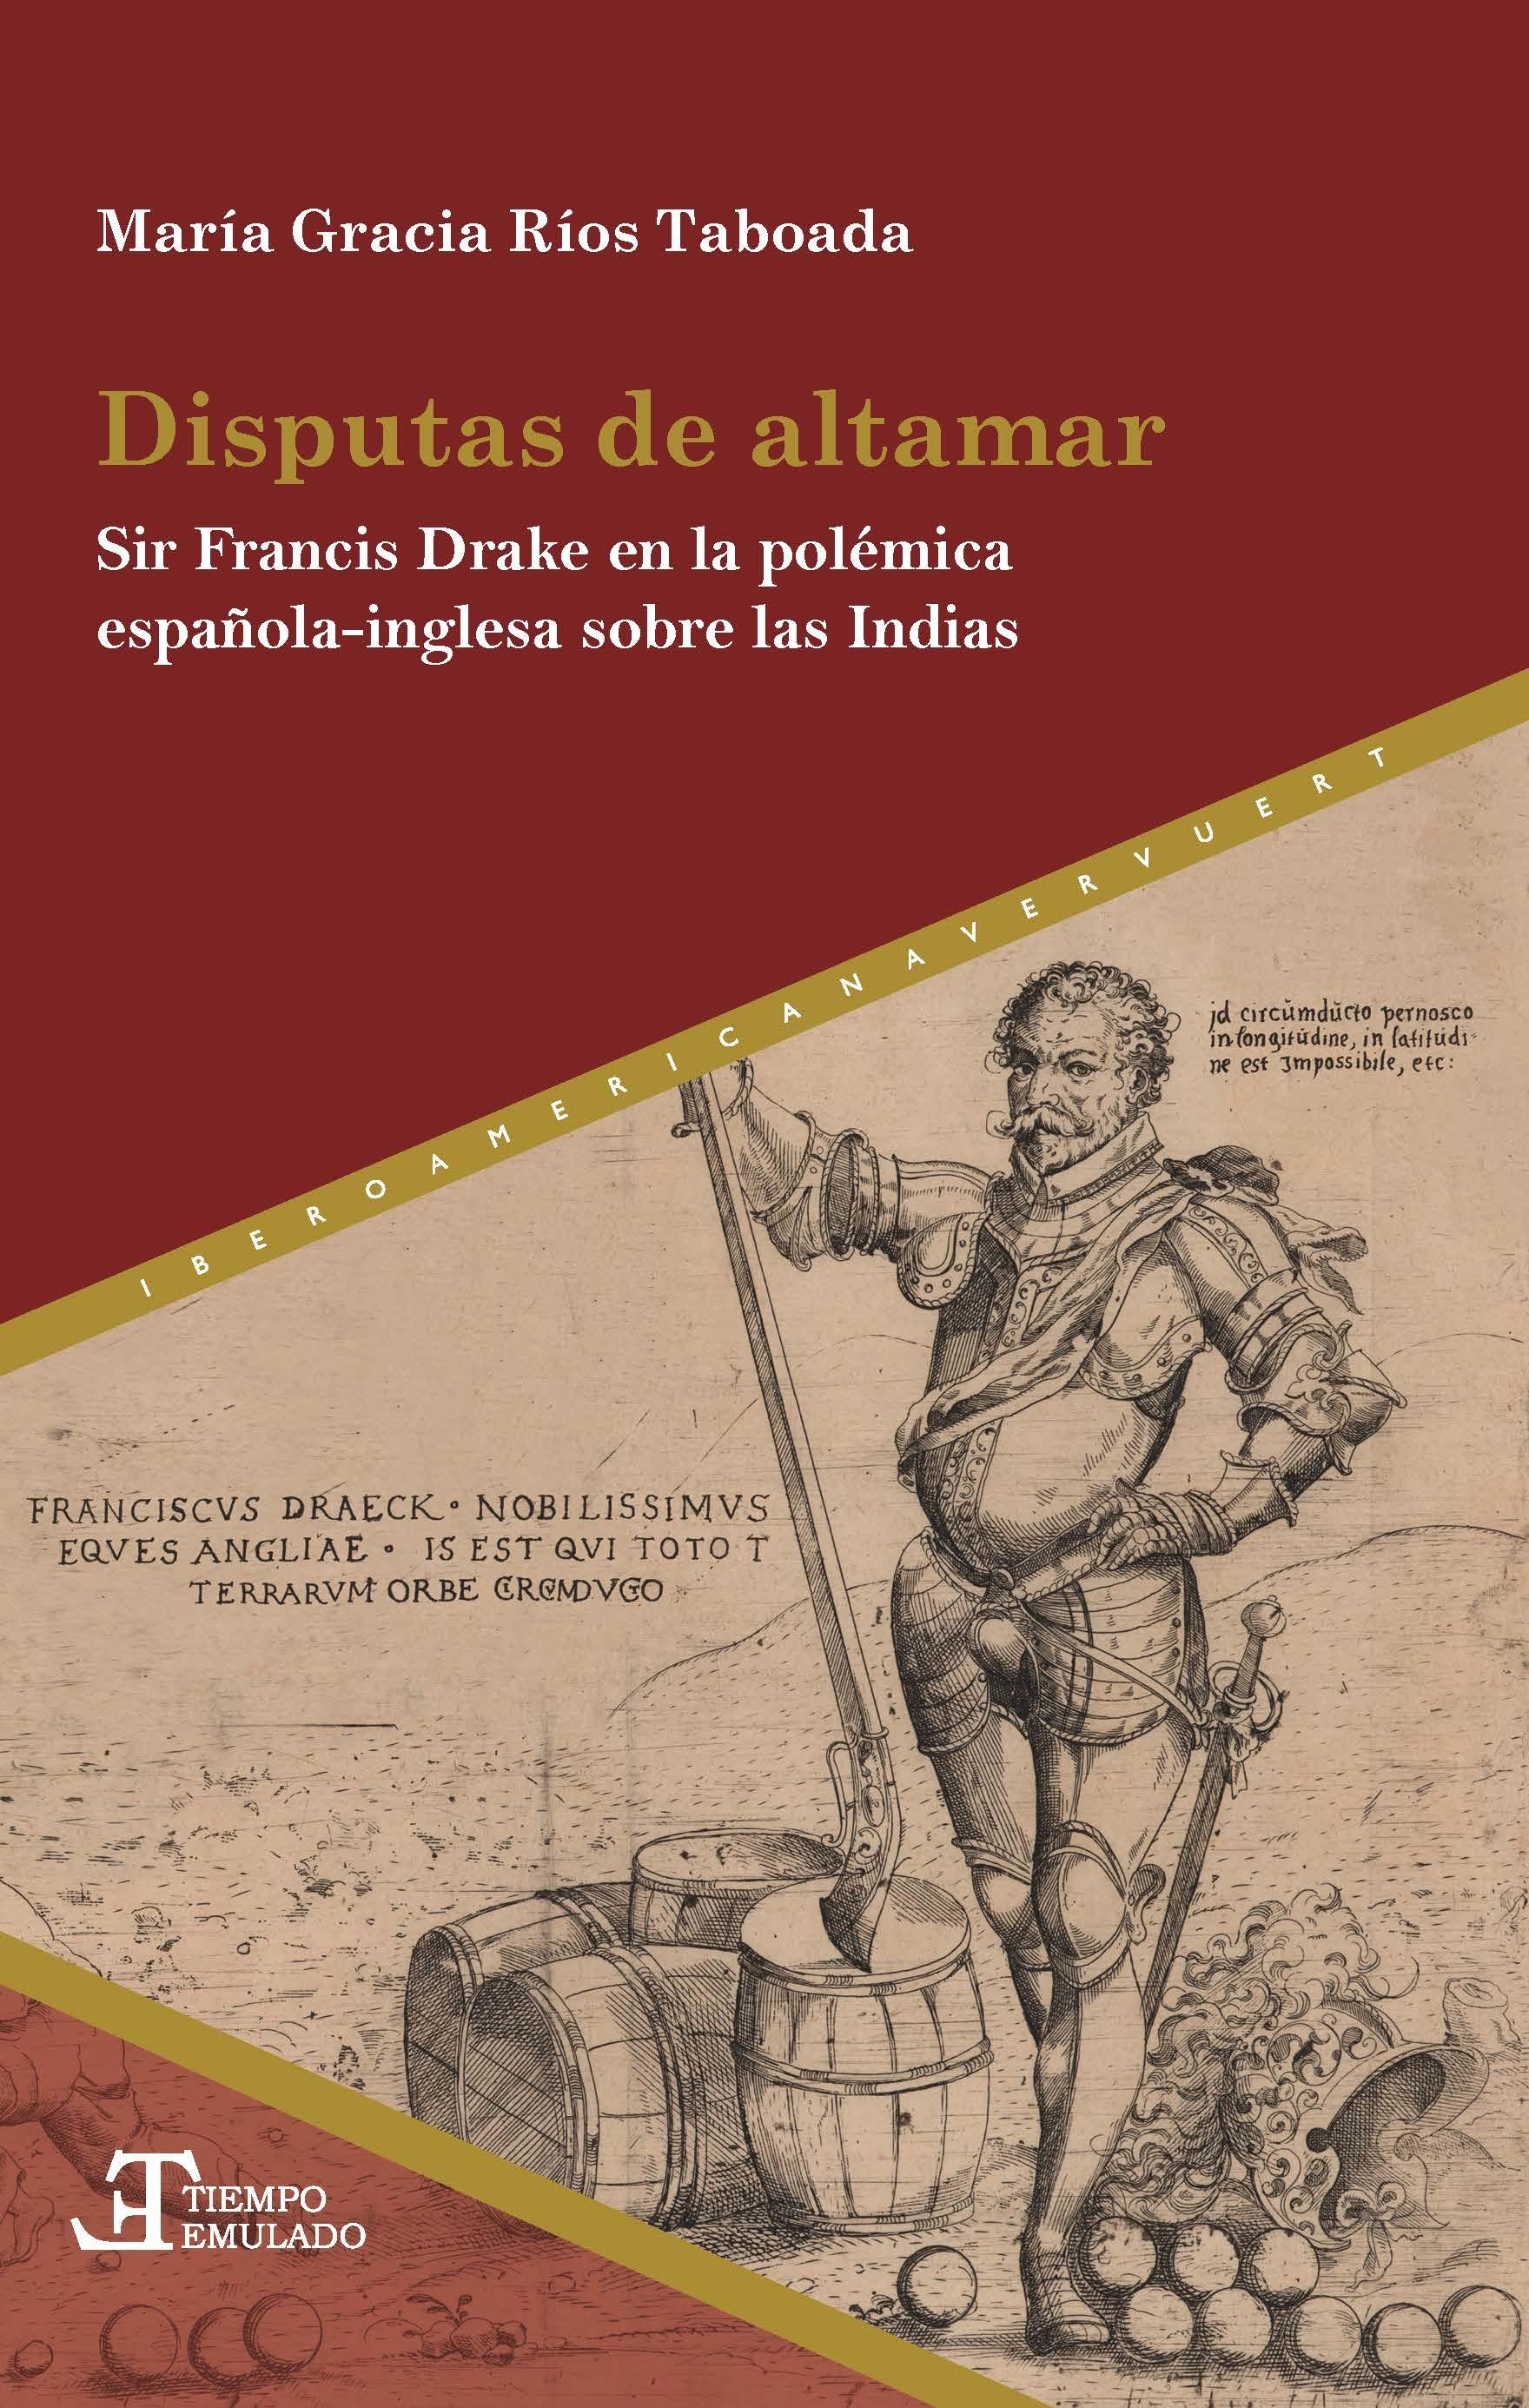 Disputas de altamar "Sir Francis Drake en la polémica española-inglesa sobre las Indias"